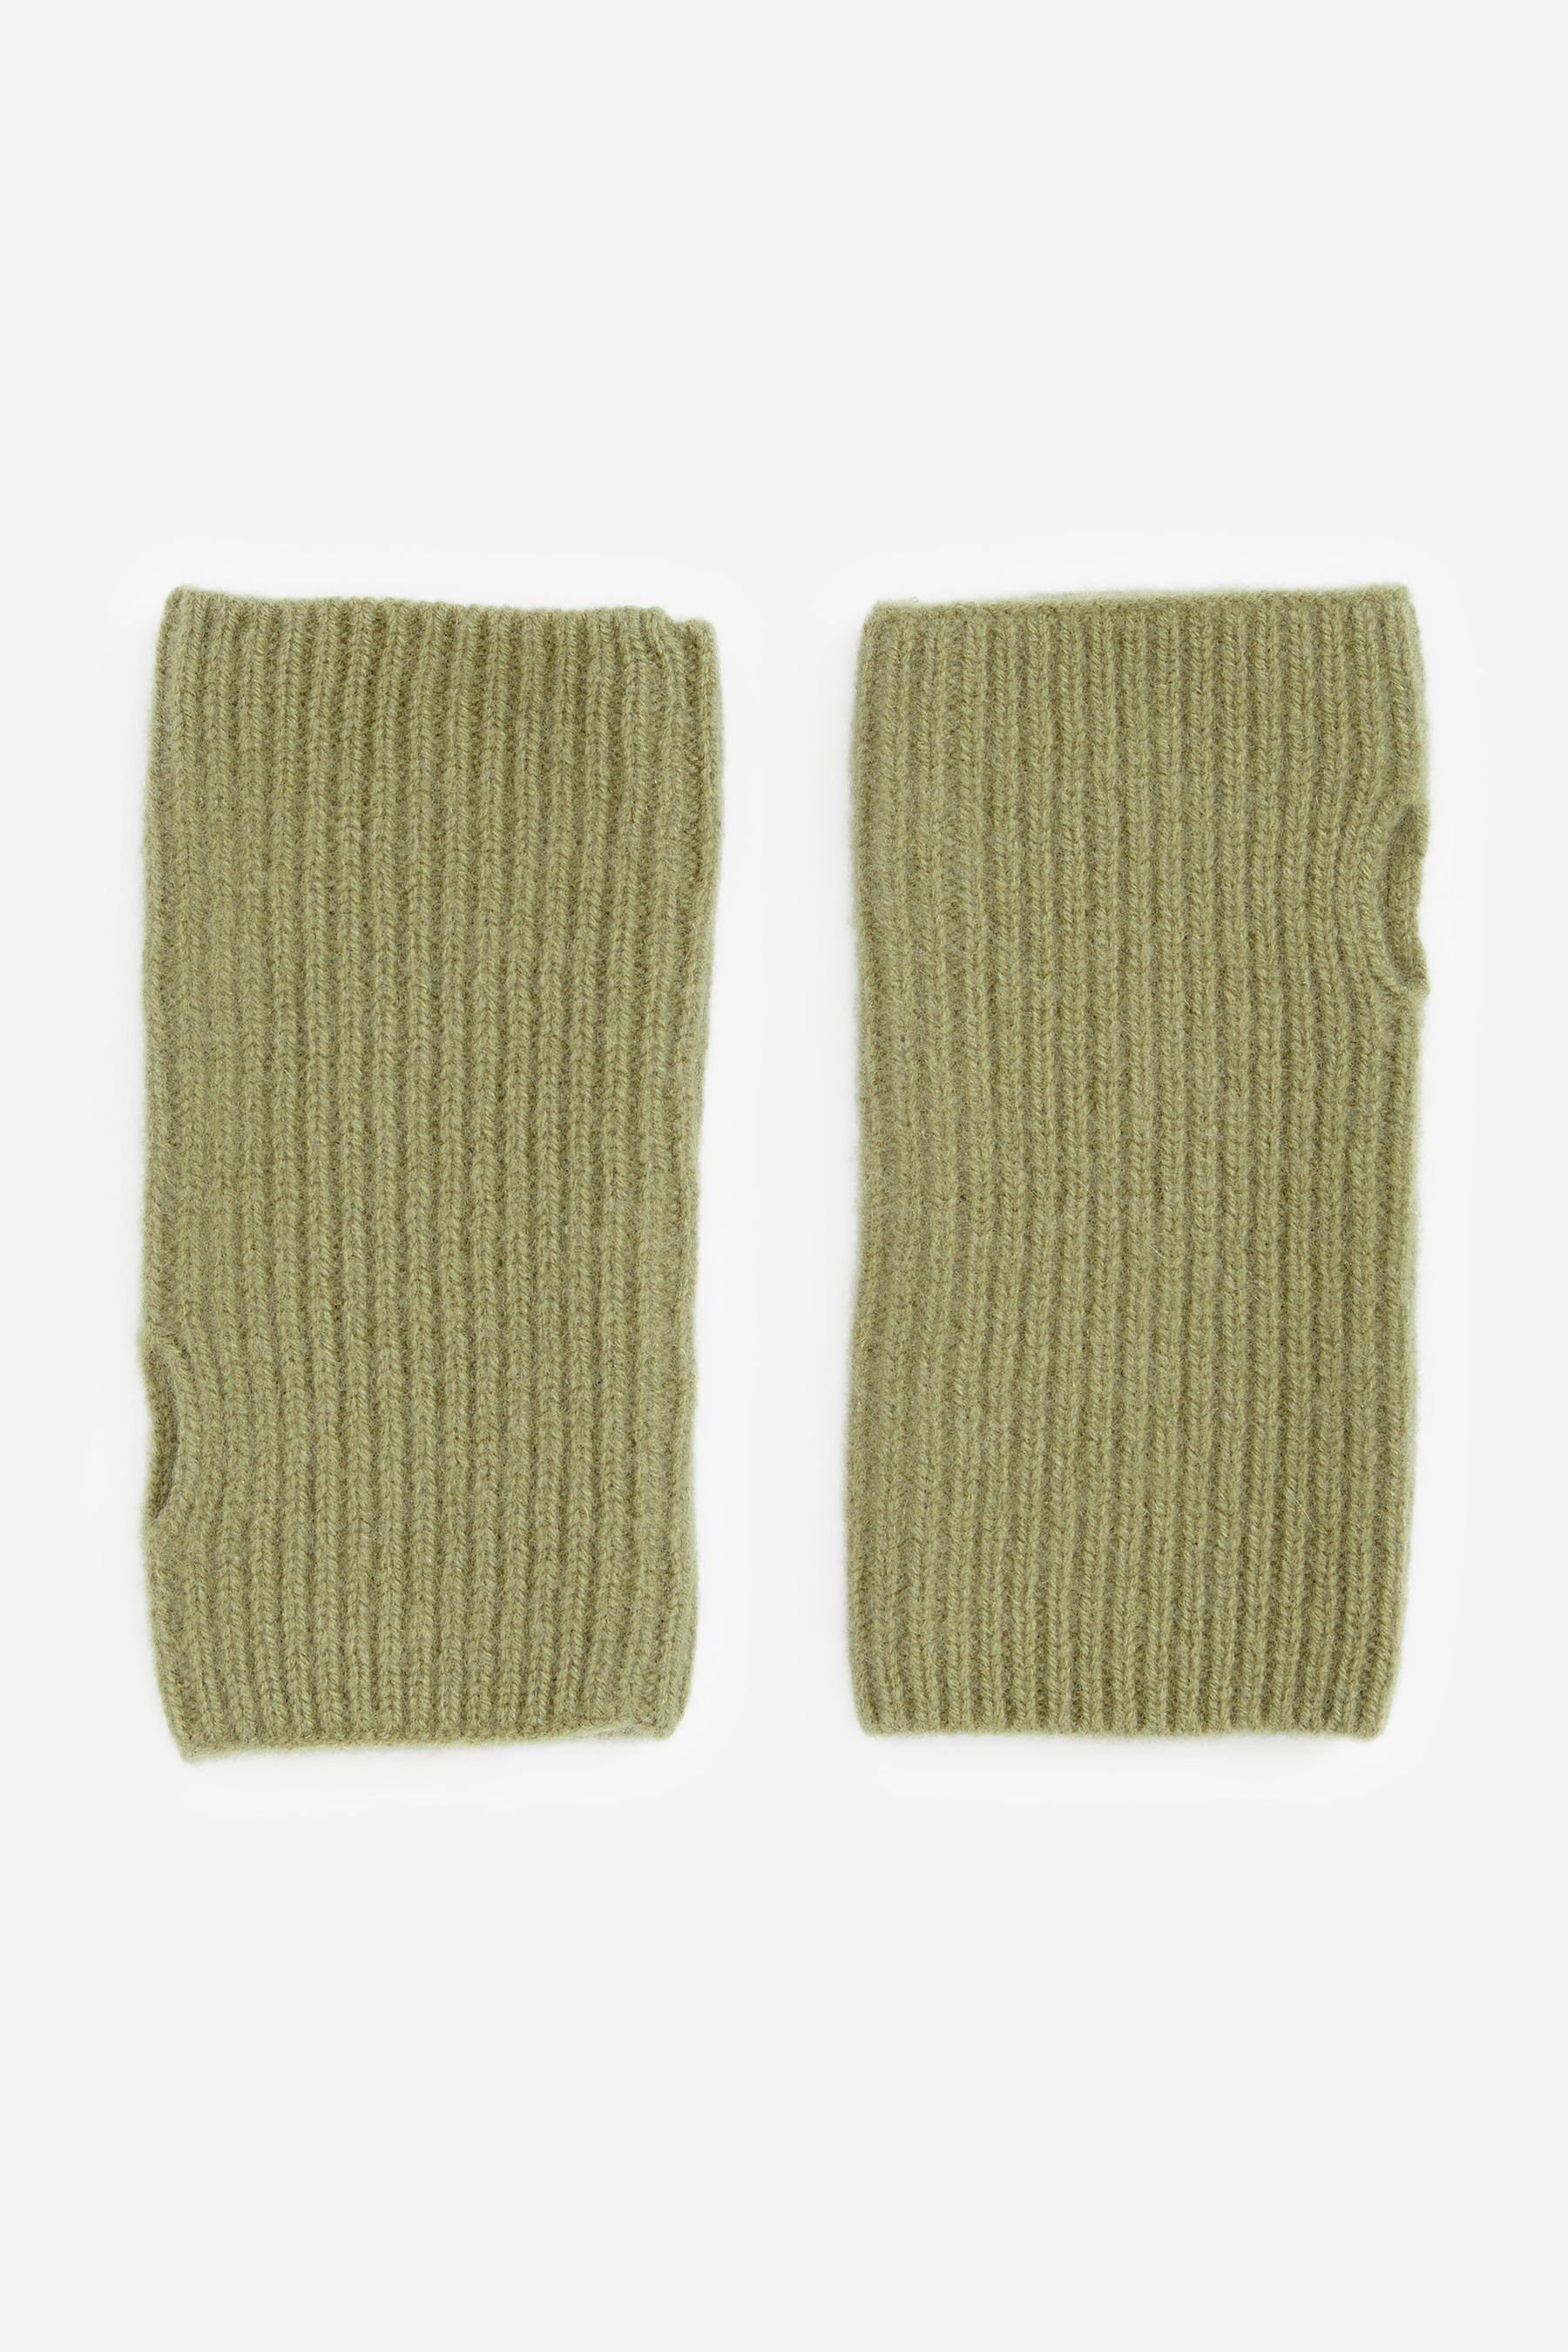 Next Strickhandschuhe Collection Luxe 30% Kaschmir Handwärmer Handschuhe Green | Strickhandschuhe